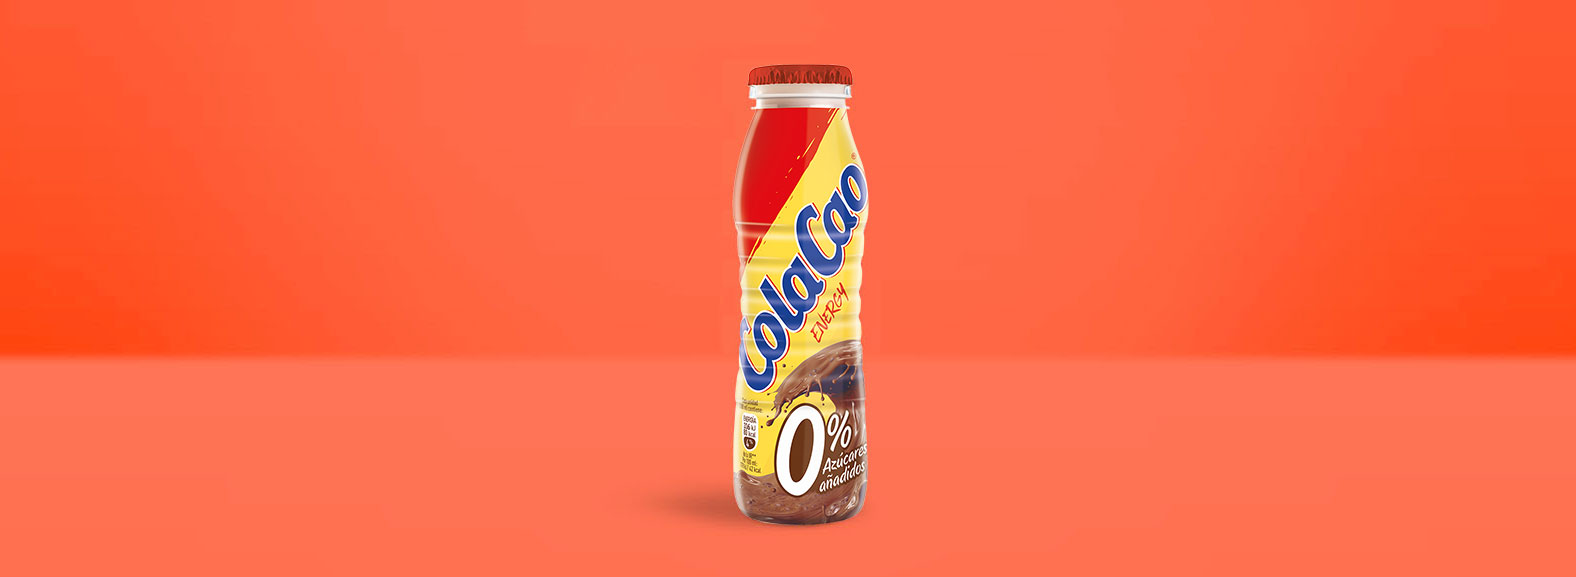 ColaCao energy 0%